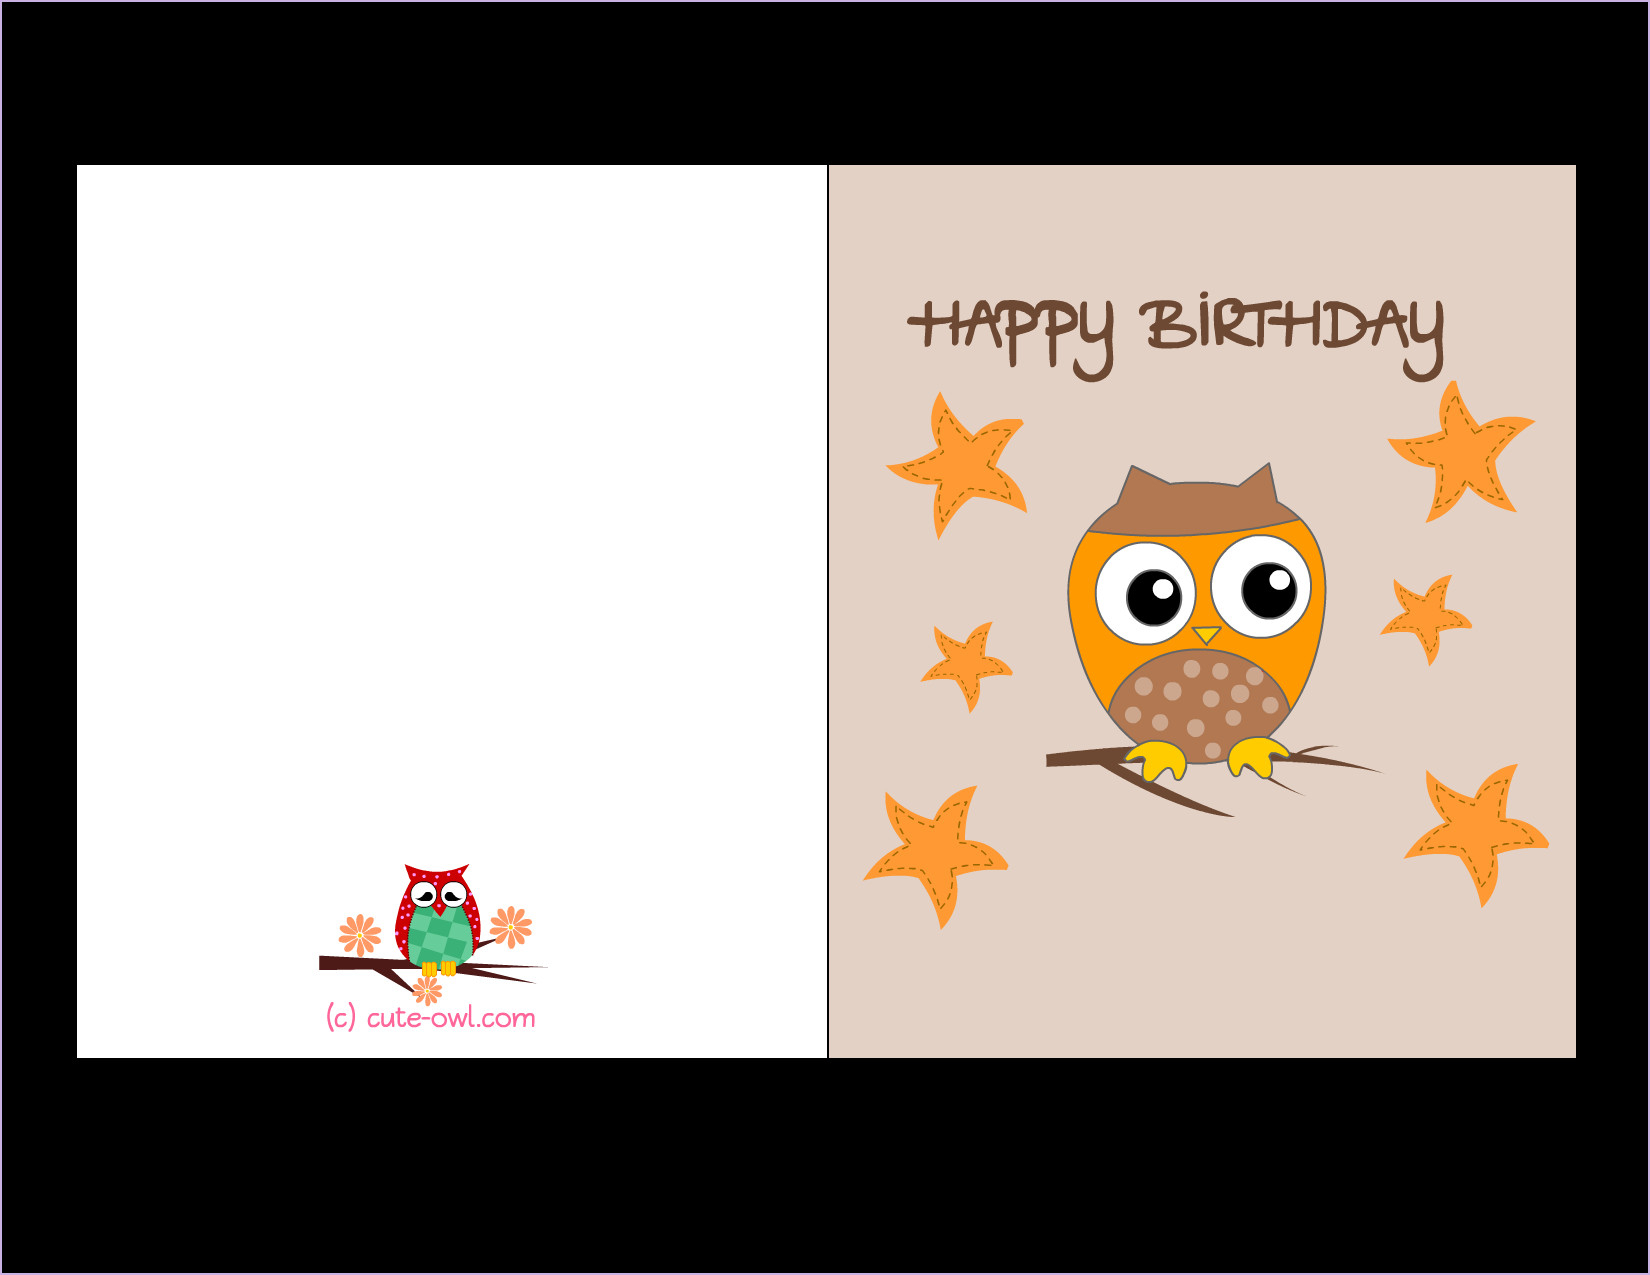 Happy Birthday Dad Card Ideas Cute Birthday Card Ideas For Dad Unique Funny Printable Happy